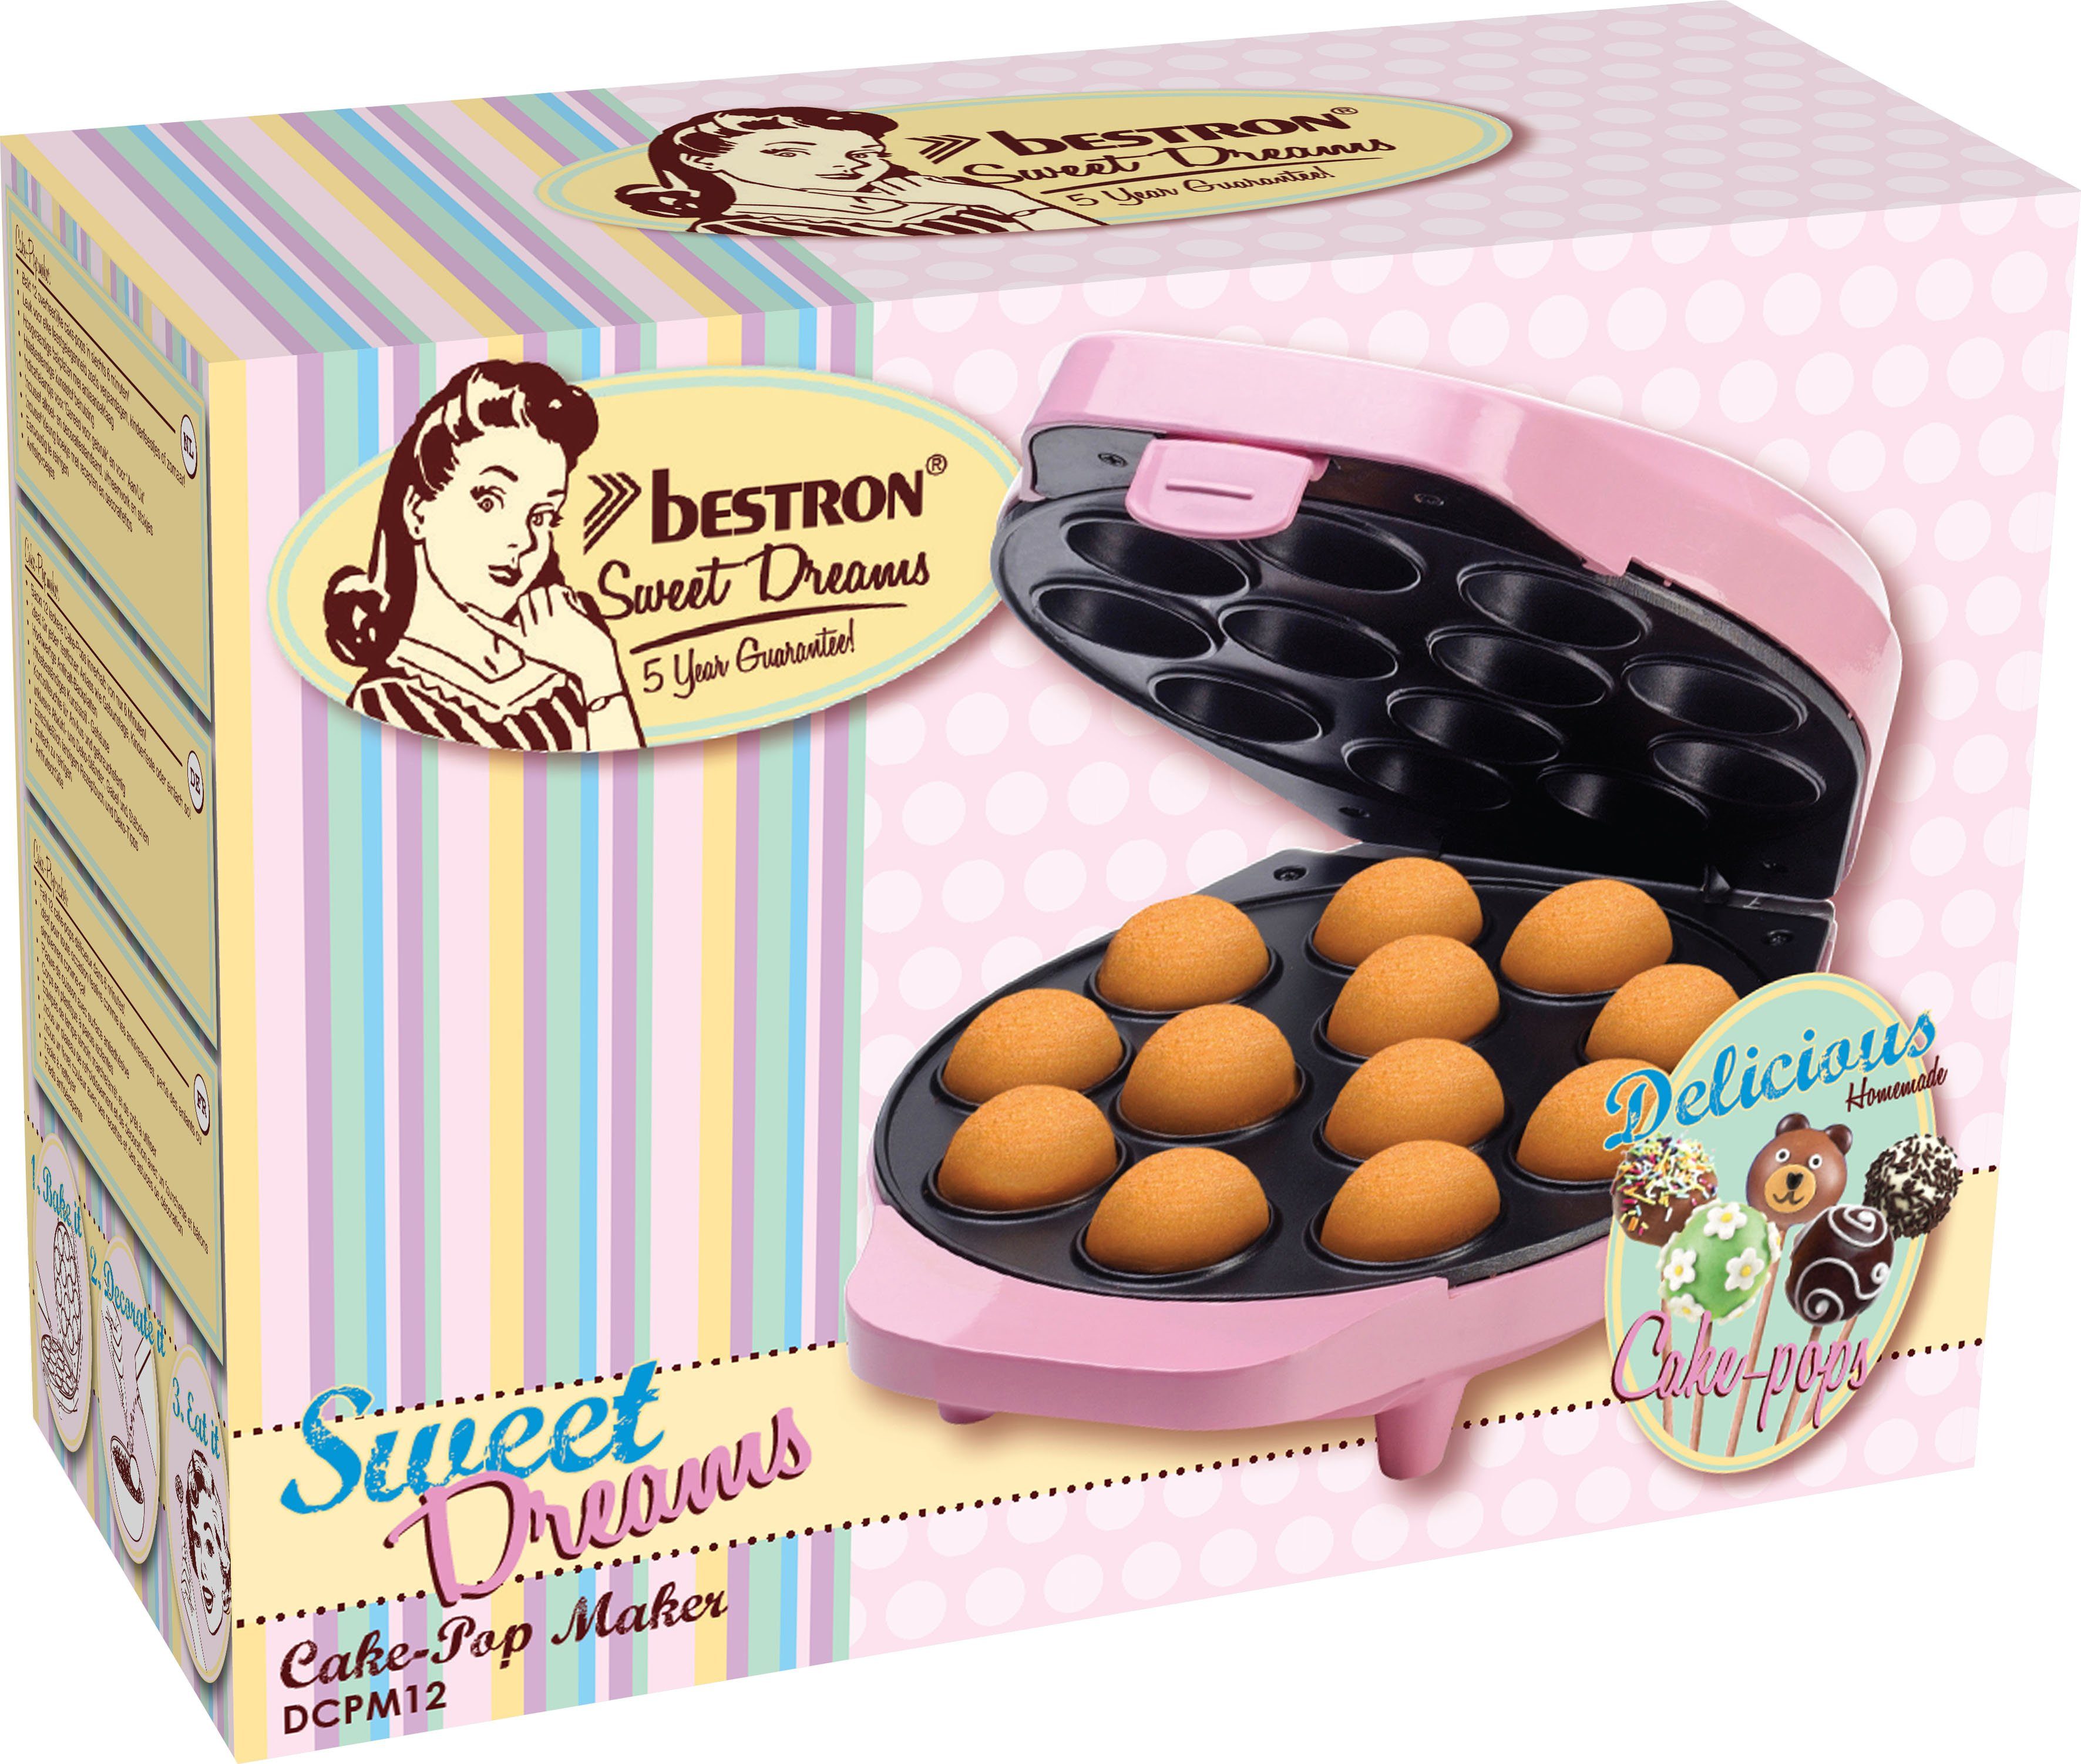 bestron Cakepop-Maker DCPM12 im Rosa 700 W, Retro Design, Dreams, Sweet Antihaftbeschichtung